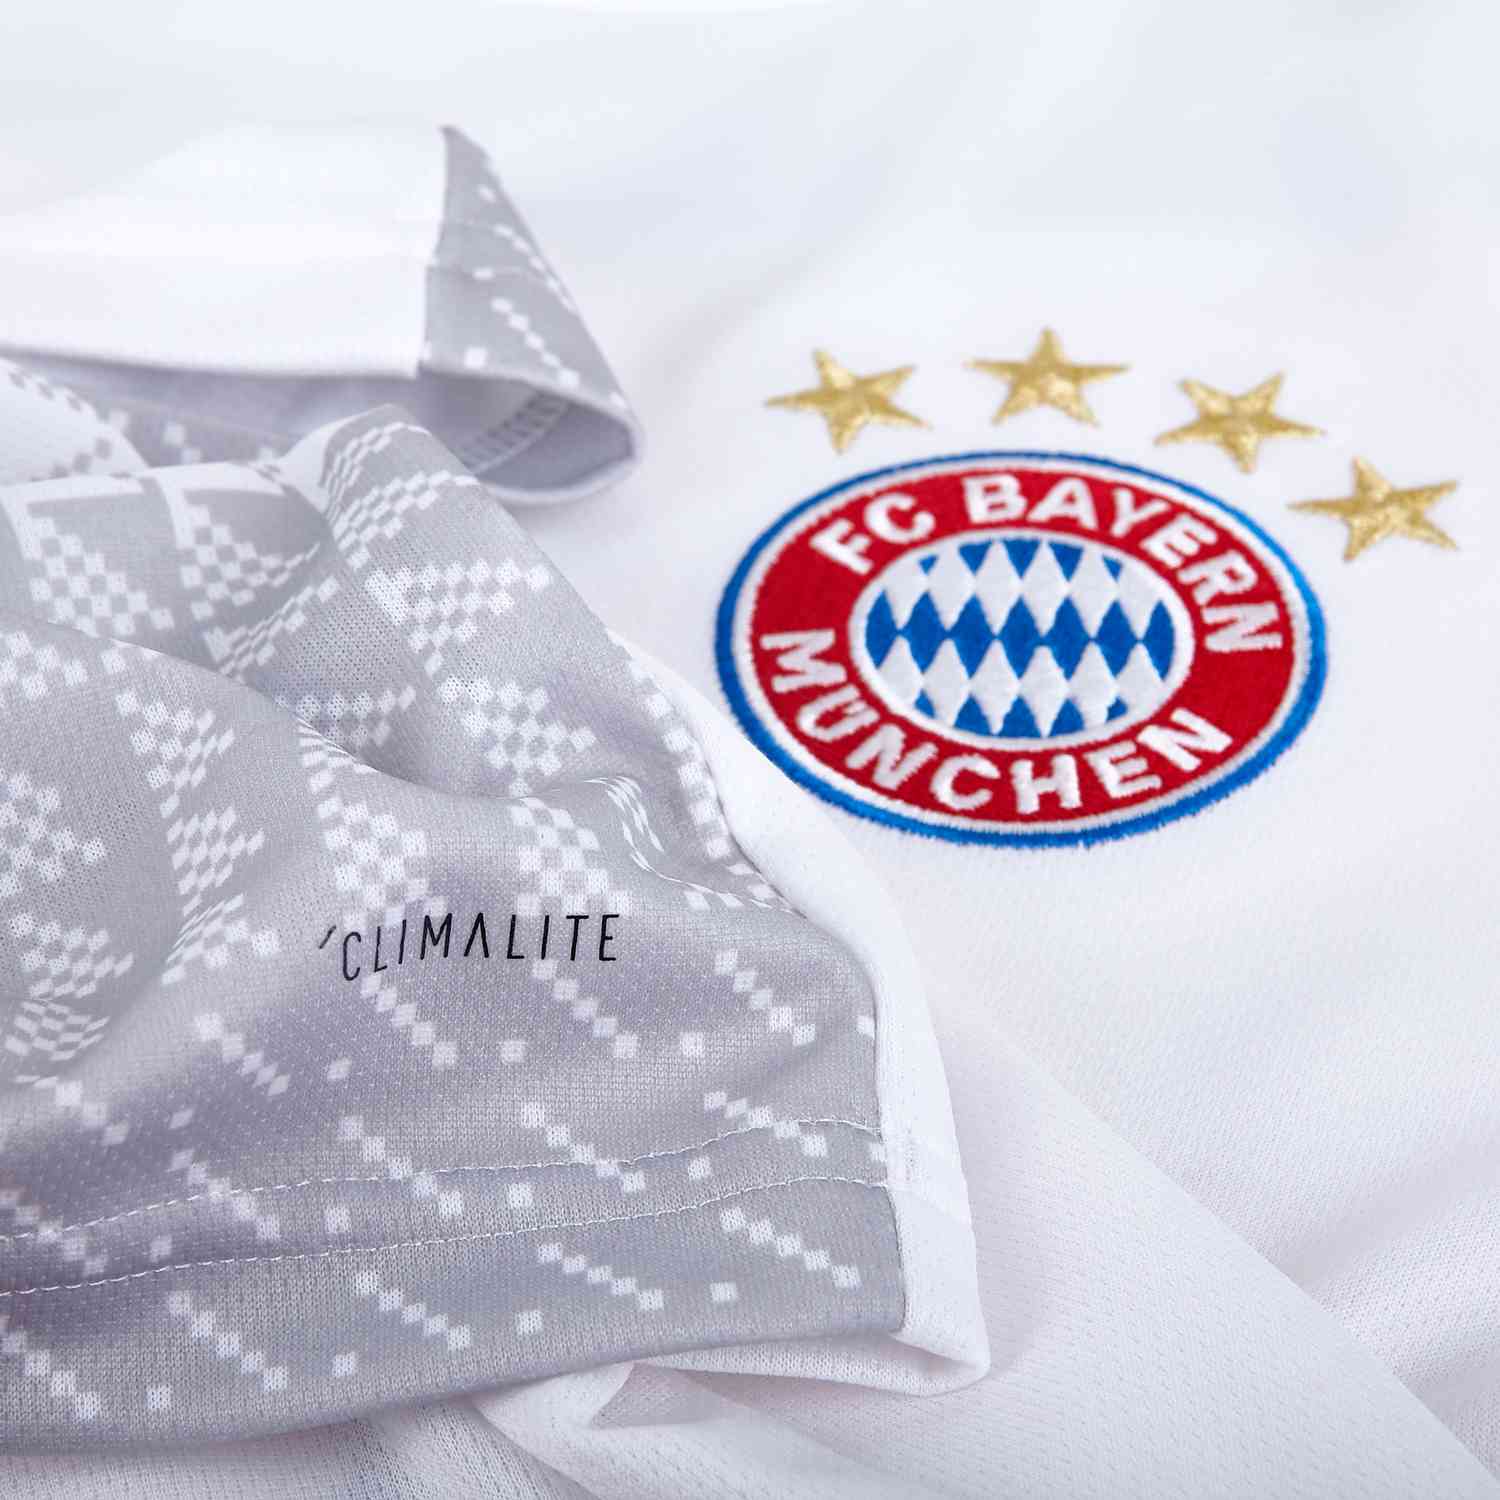 FC Bayern Munich 2019/20 Home Jersey by adidas